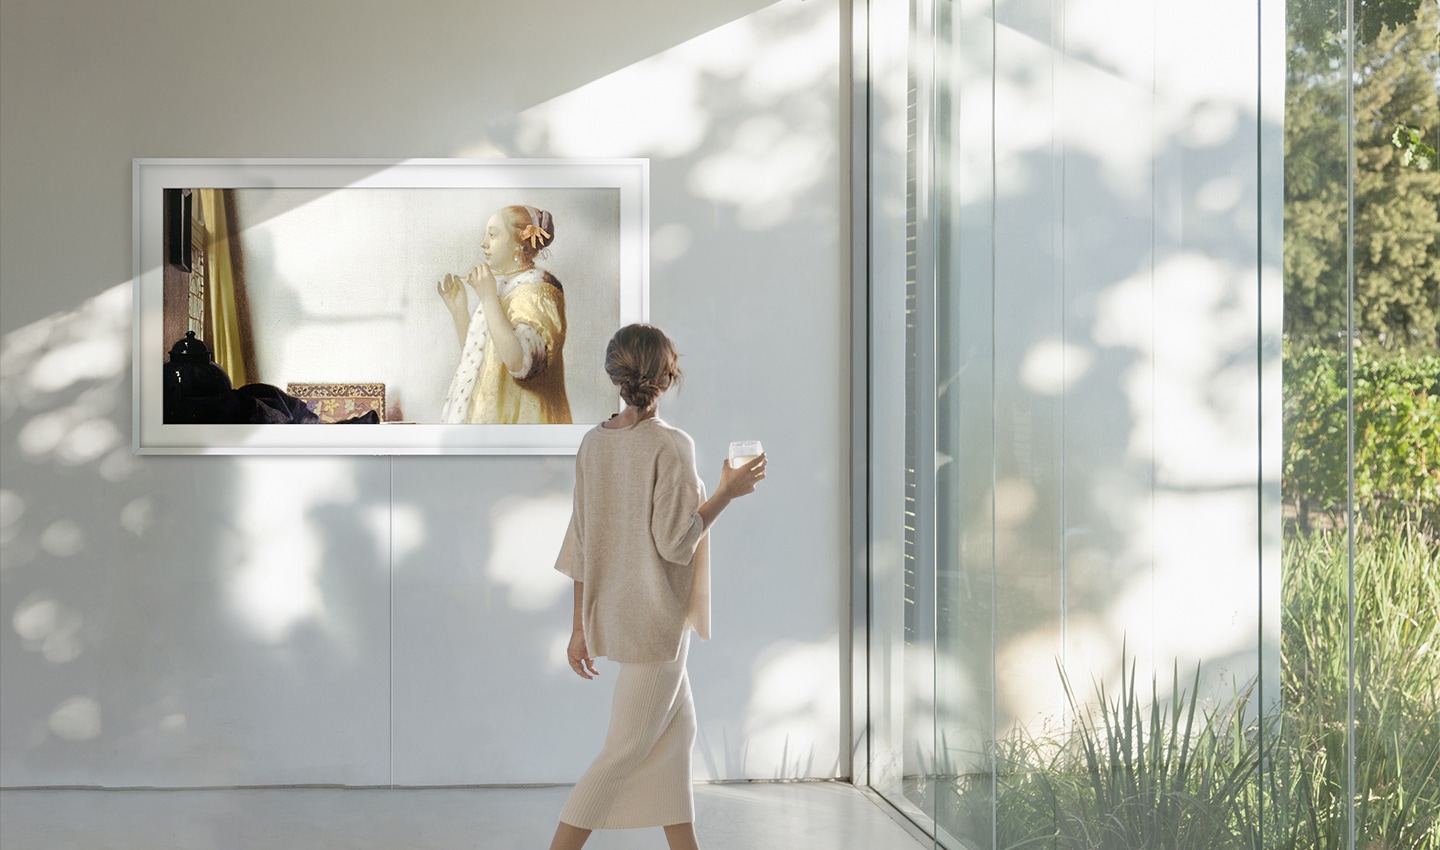 햇살이 환하게 들어오는 공간에 The Frame이 걸려 있습니다. 화면에는 요하네스 베르메르의 <진주 목걸이를 한 여인>이 띄워져 있어 마치 갤러리 같은 분위기가 연출됩니다. 한 여성이 지나가며 작품을 보고 있습니다.